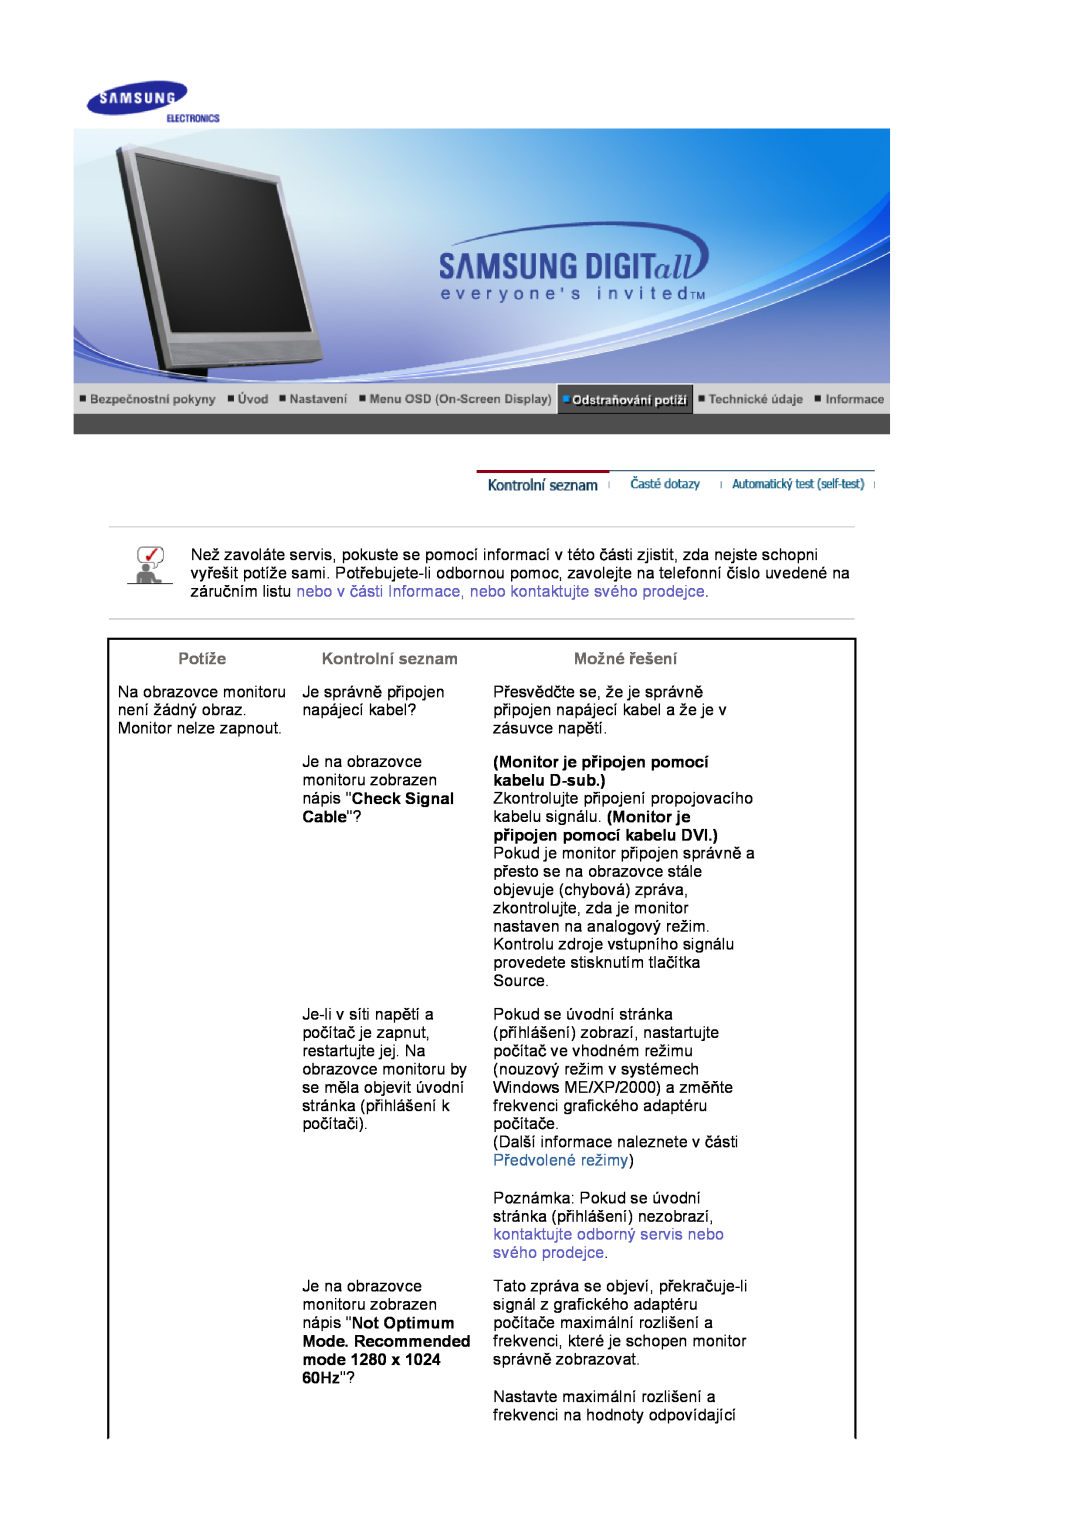 Samsung LS17MJSTSE/EDC nápis Check Signal, Cable?, Mode. Recommended mode 1280 x 1024 60Hz?, Potíže, Kontrolní seznam 